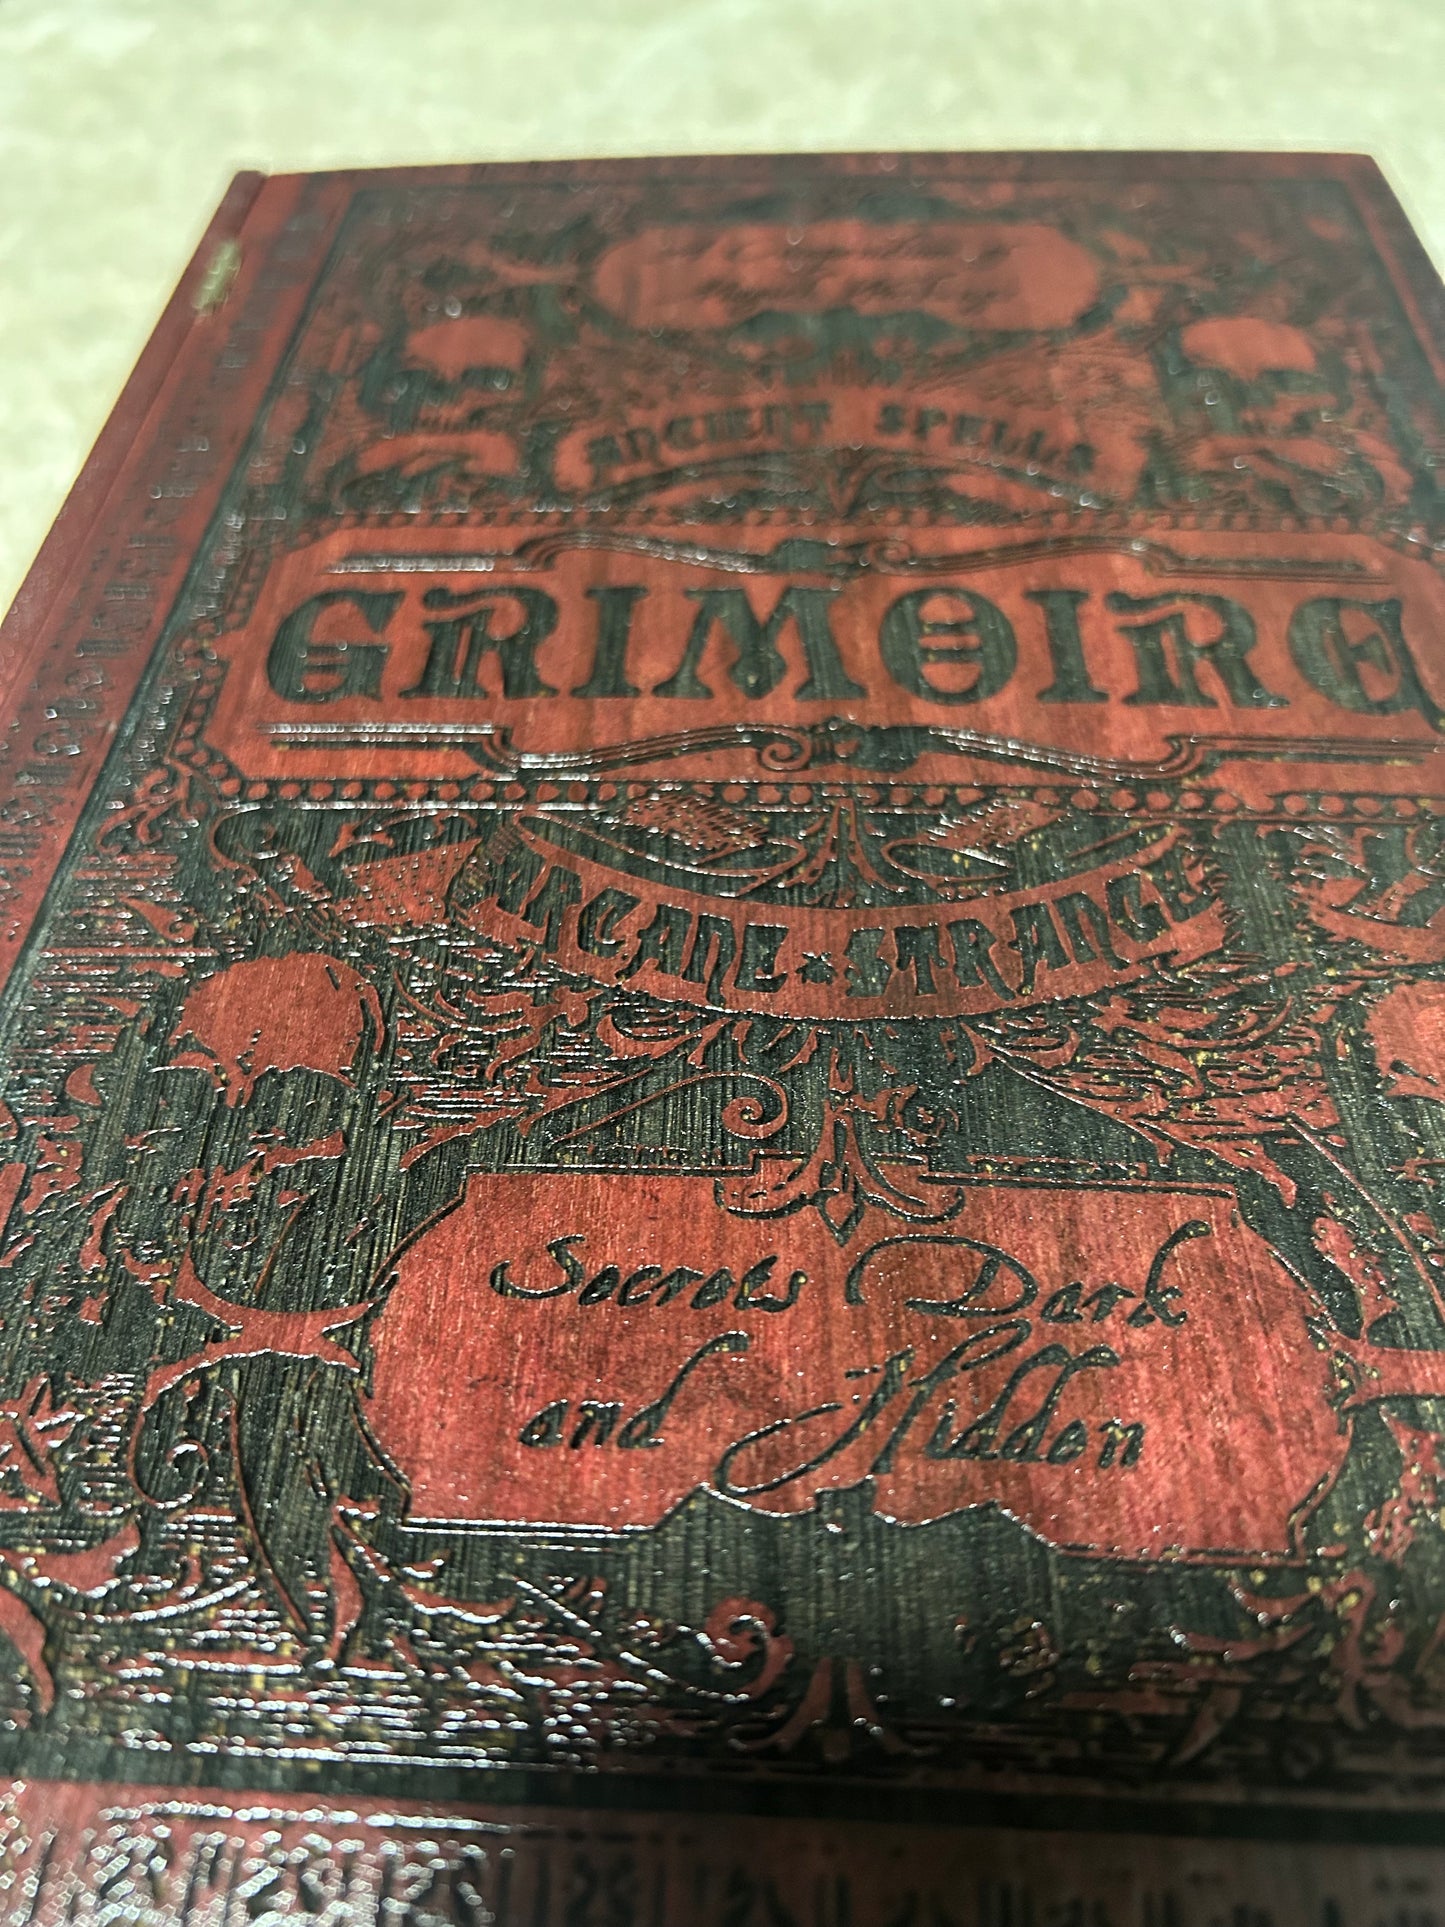 Book: Grimoire